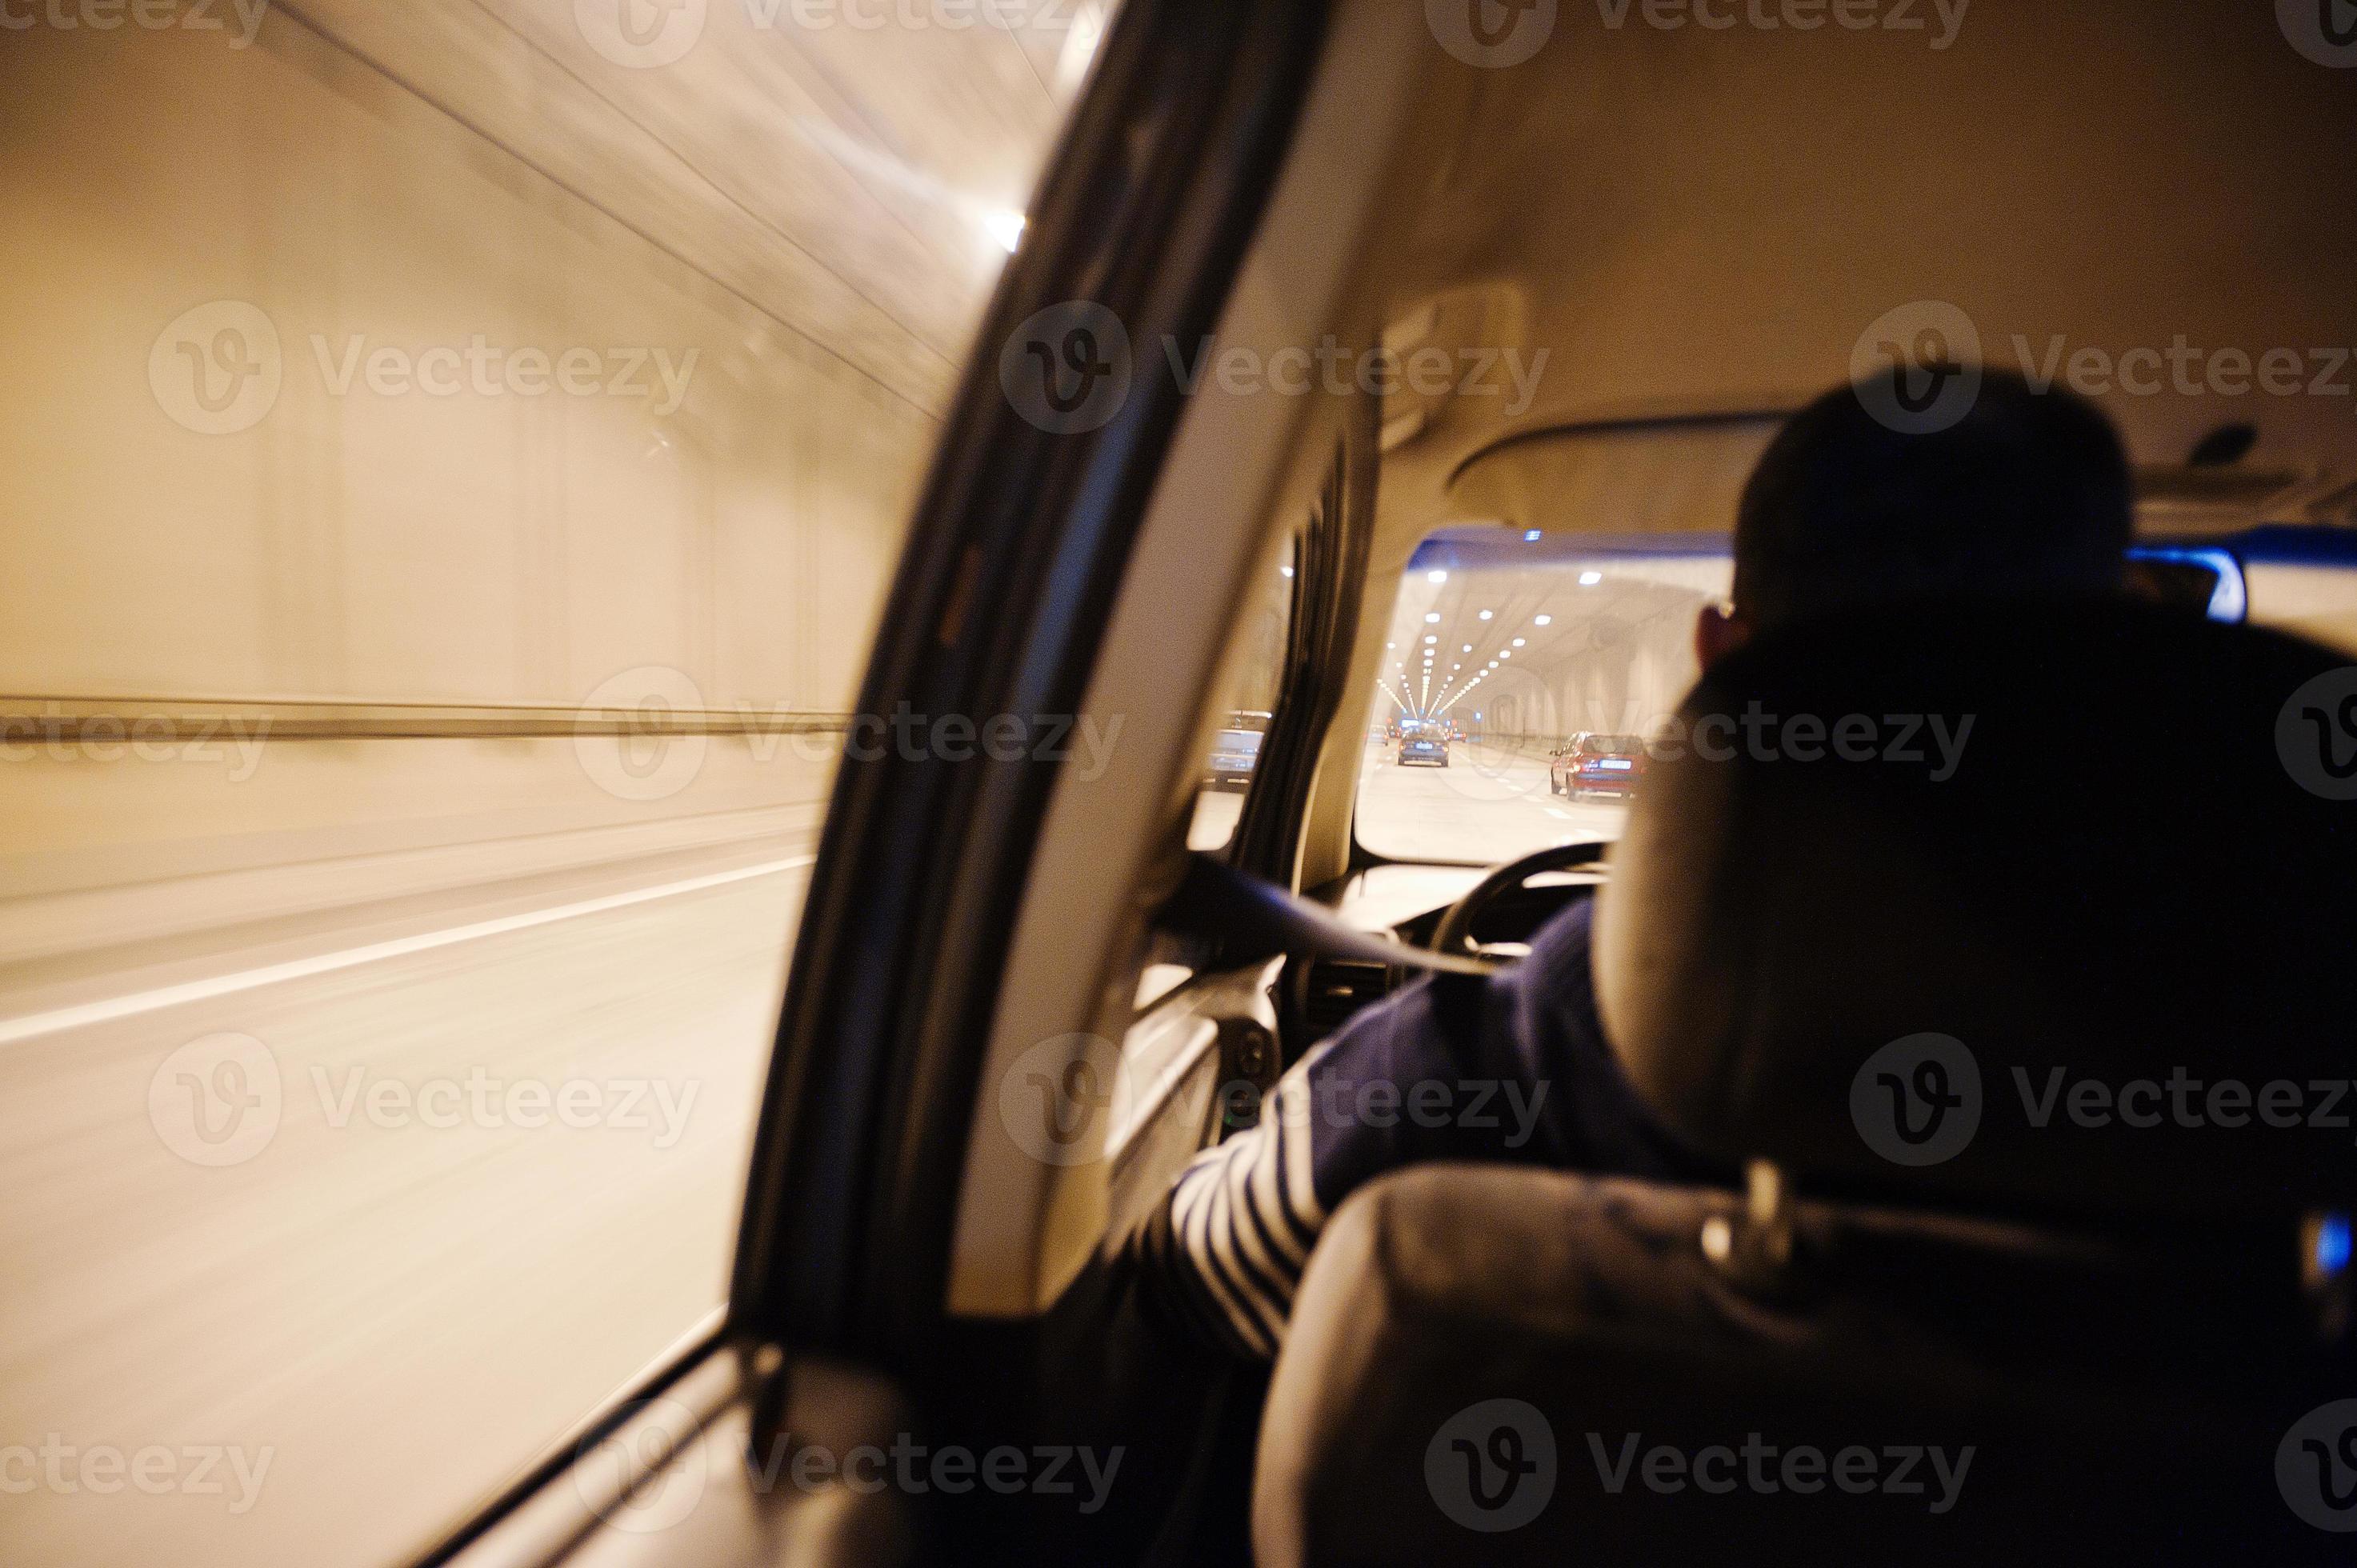 https://static.vecteezy.com/ti/fotos-kostenlos/p2/5974283-blick-aus-dem-autofenster-auto-bewegt-sich-durch-den-tunnel-bei-lichtfahrer-fahrendes-auto-foto.jpg